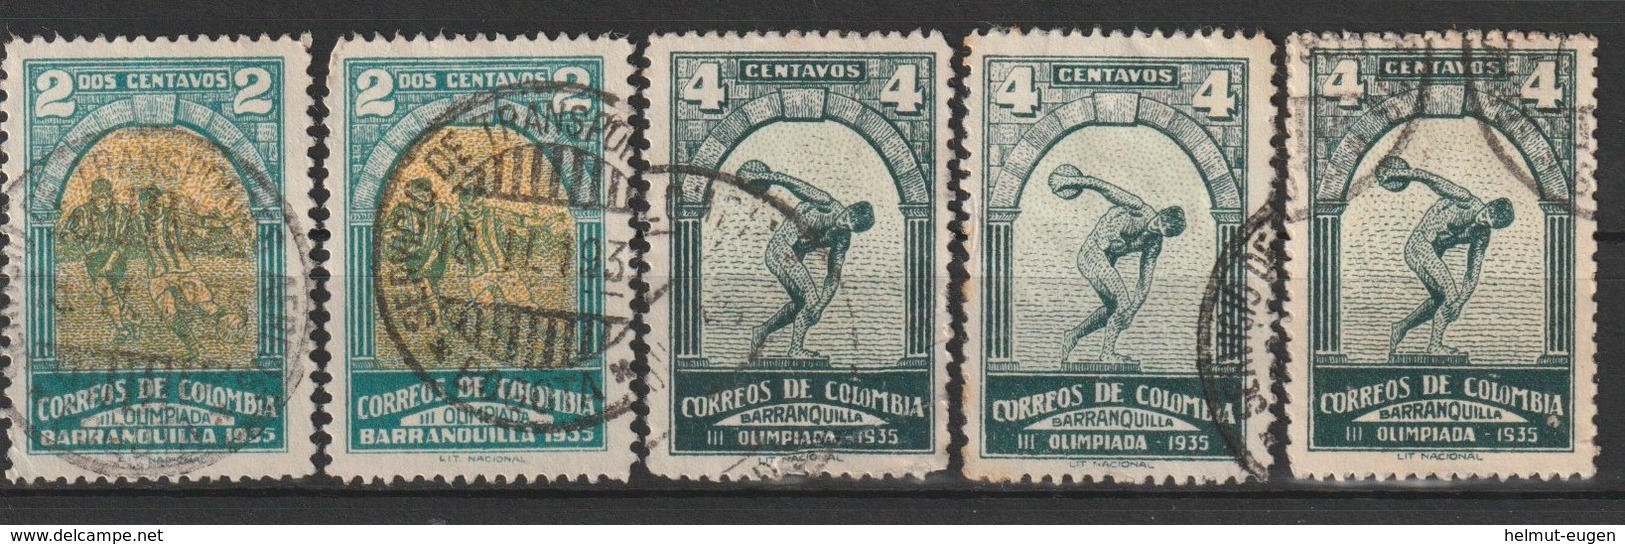 MiNr. 351 - 352  Kolumbien 1935, 26. Jan. 3. Internationale Olympische Spiele Süd- Und Mittelamerikas, Barranquilla. - Kolumbien